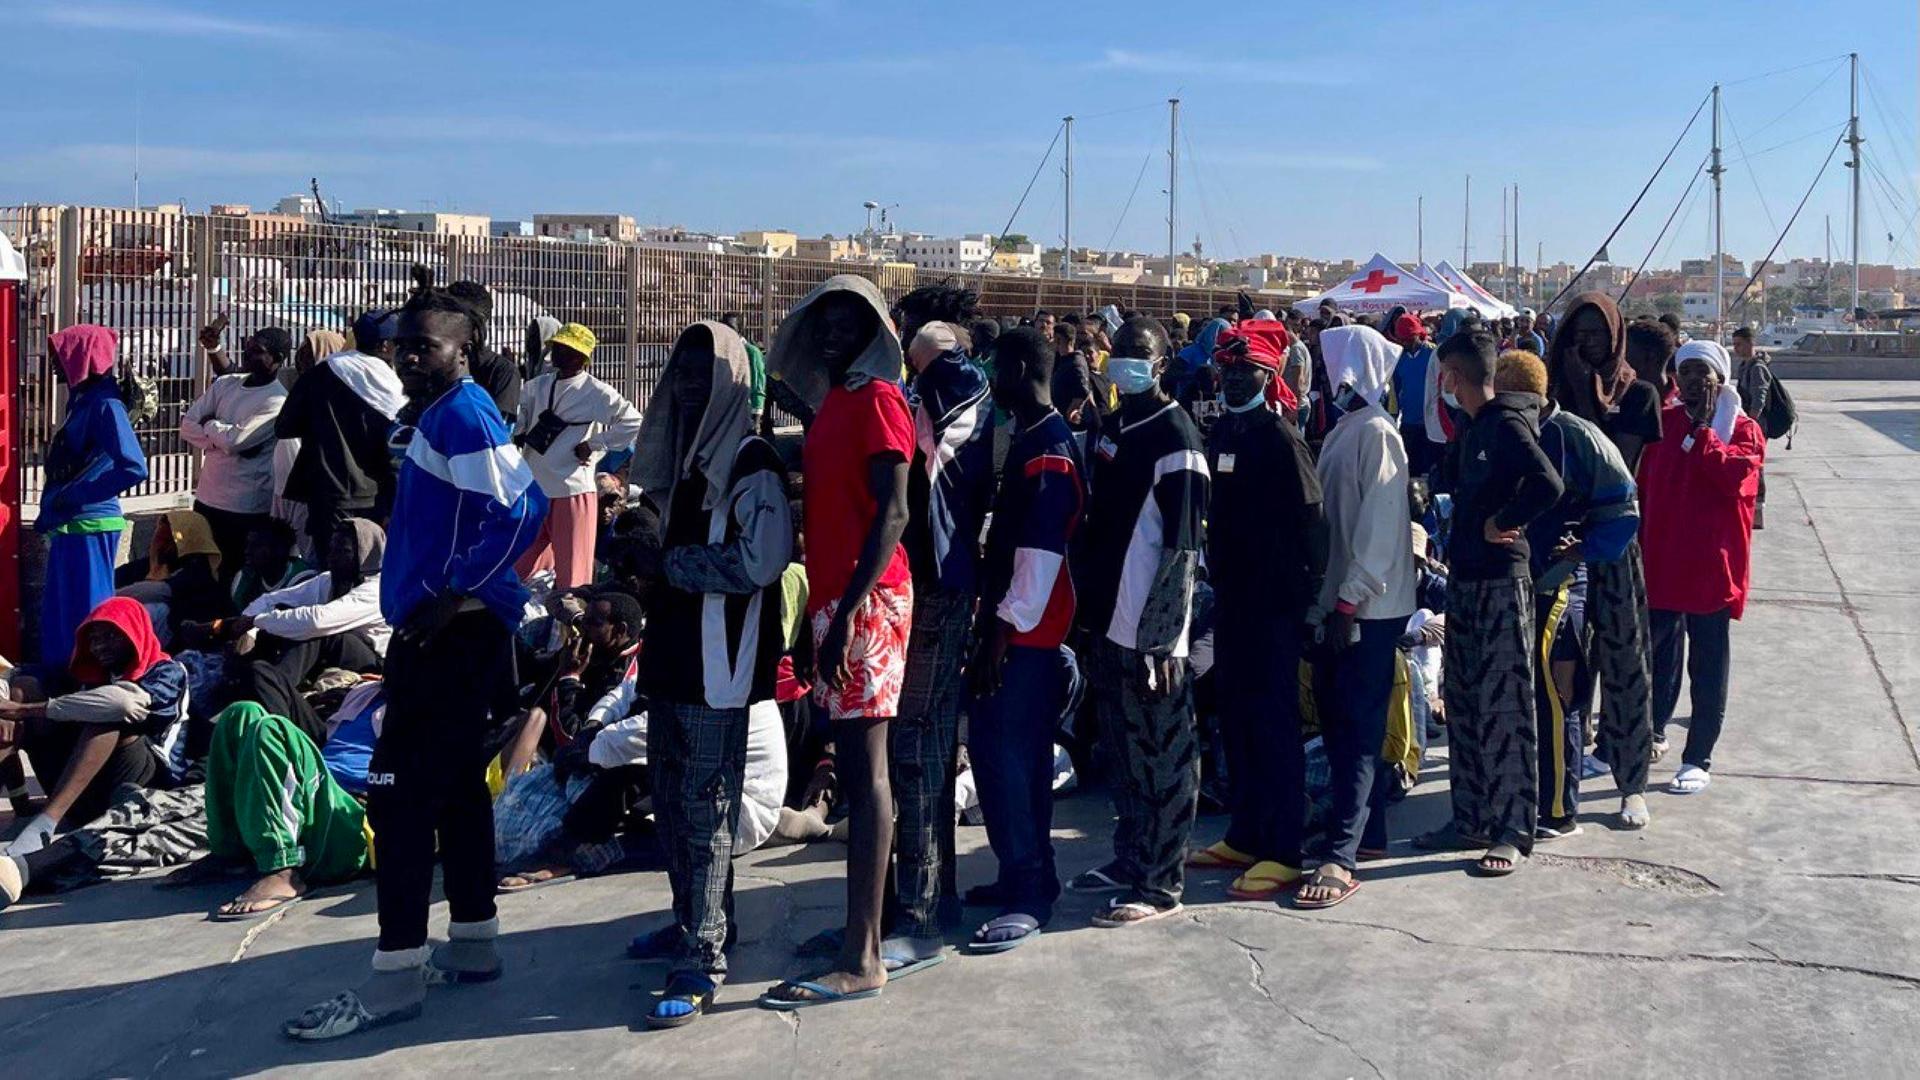 Migranten erreichen die Insel Lampedusa und warten in einer Schlange.